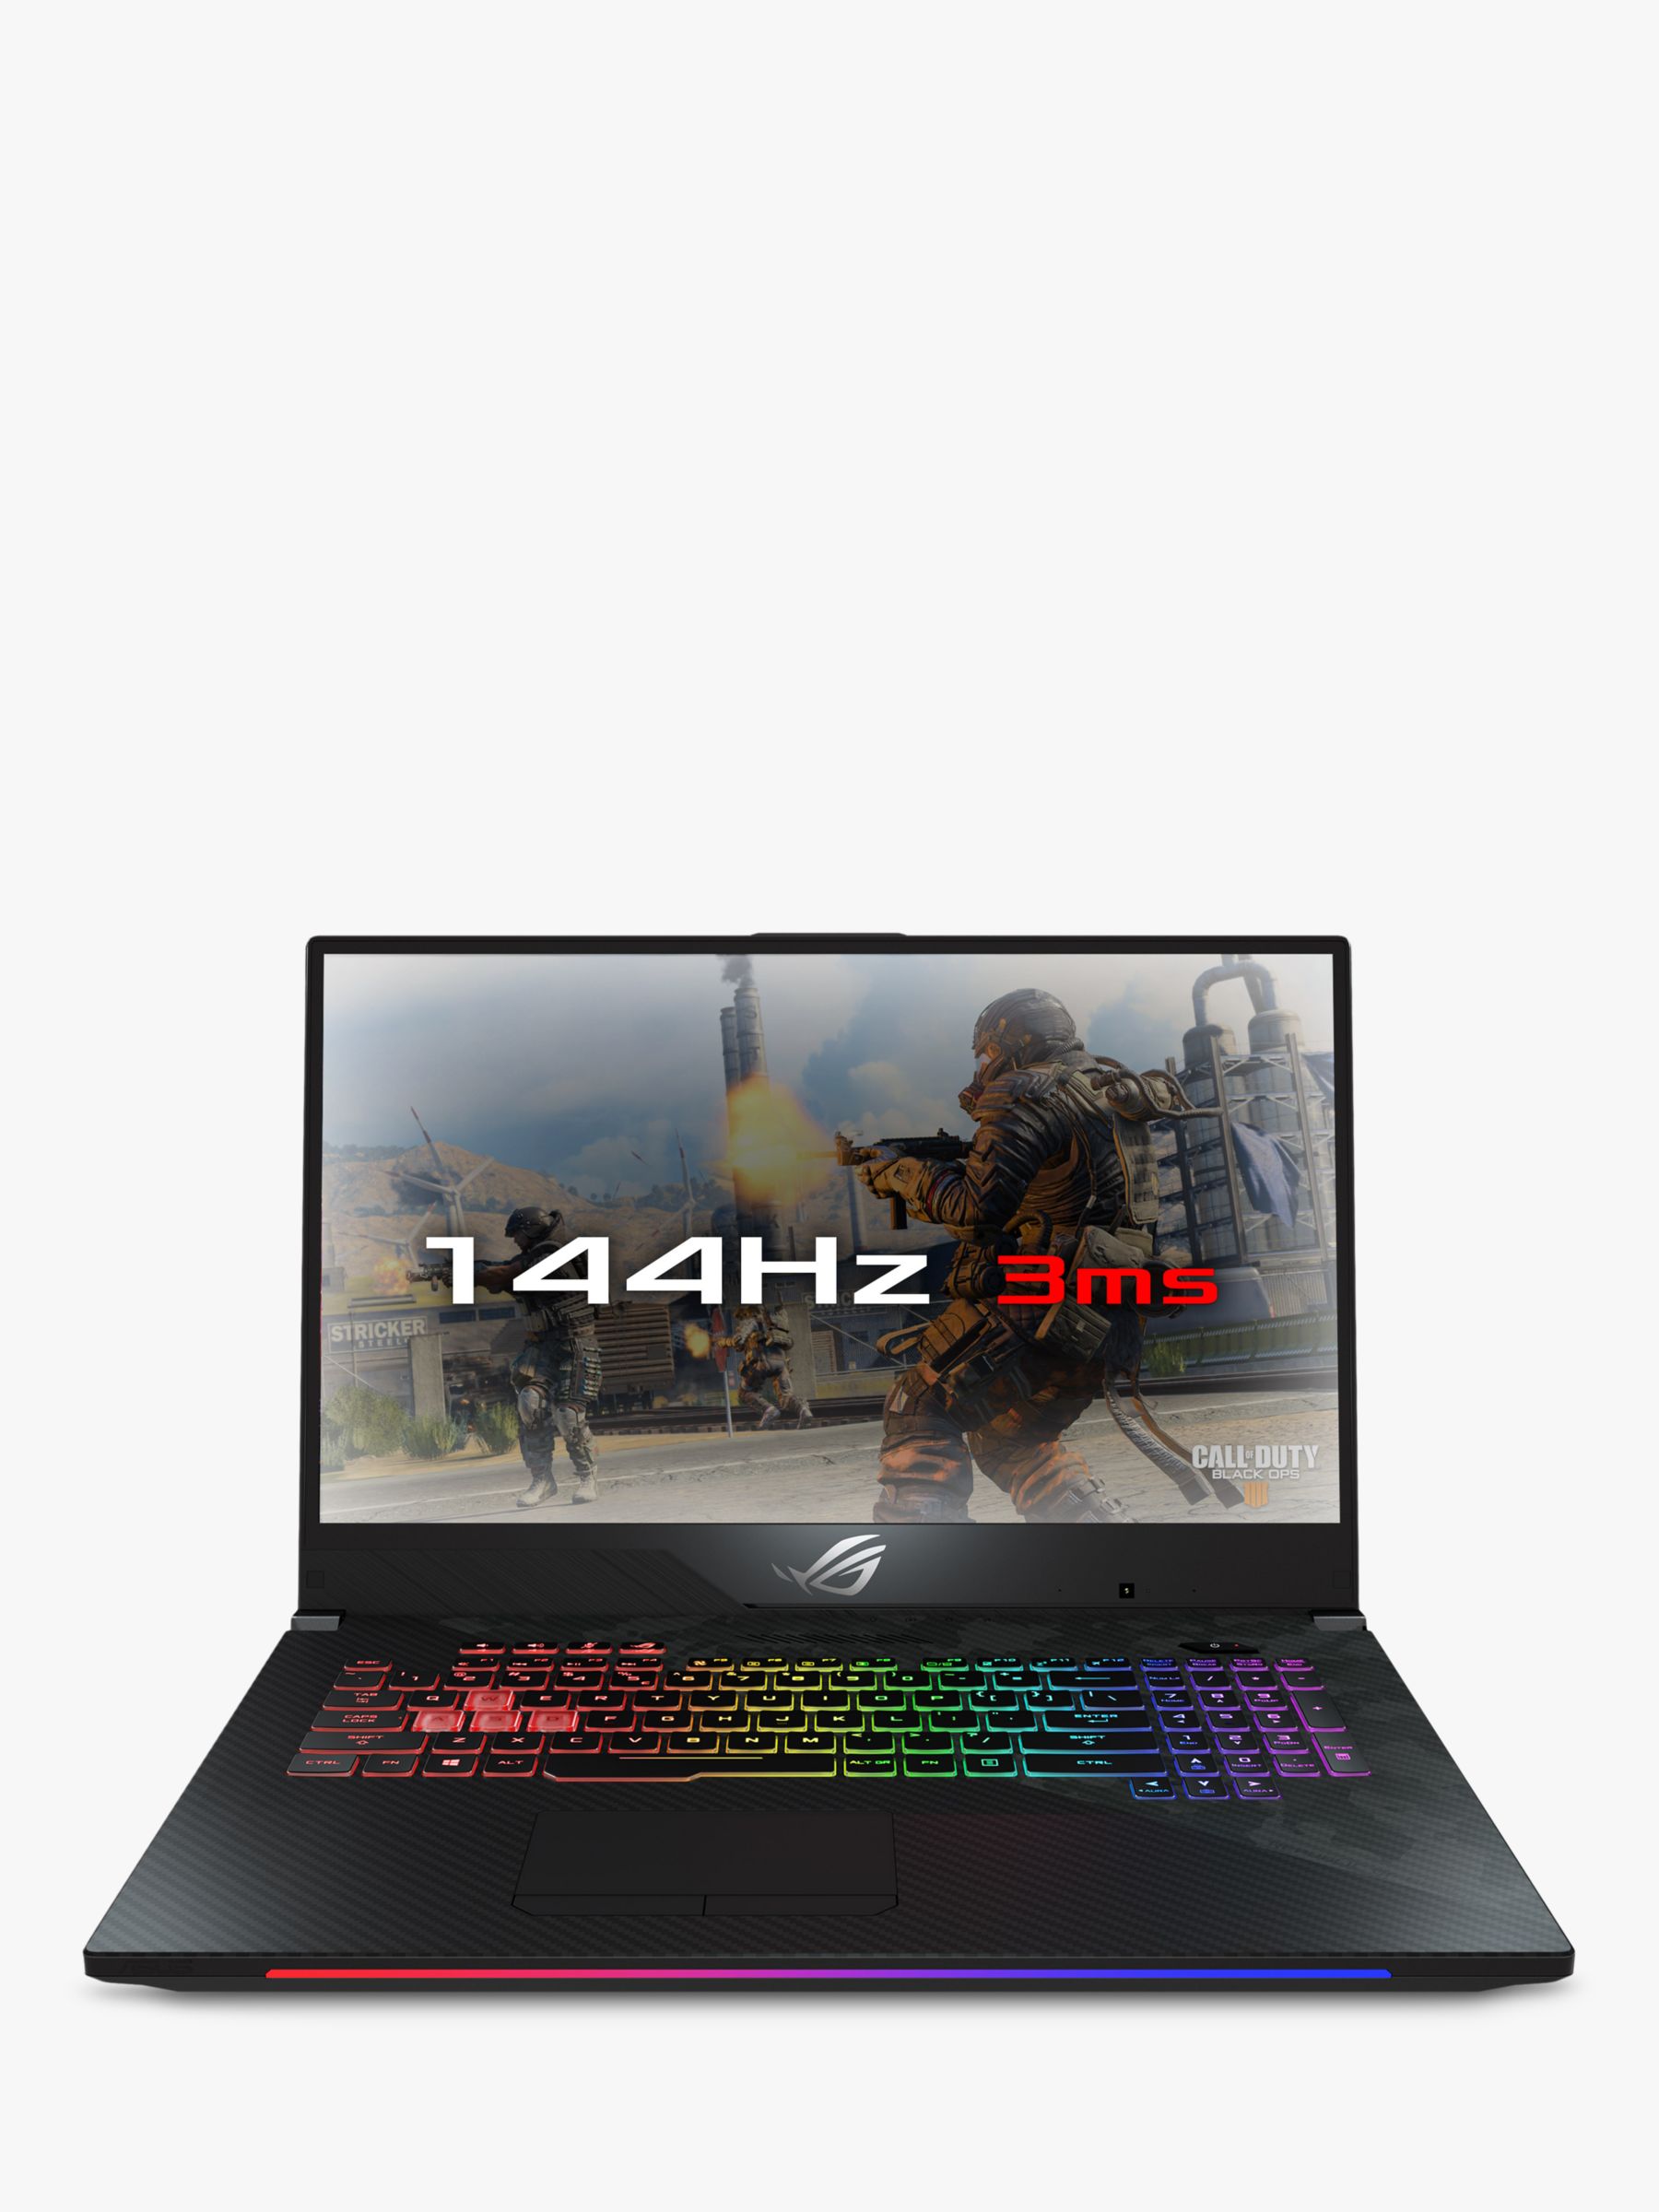 ASUS ROG Strix 17 GL704GW-EV004T Gaming Laptop, Intel Core i7 Processor, 16GB RAM, 1TB HDD + 512GB SSD, GeForce RTX 2070, 17.3” Full HD, Gun Metal